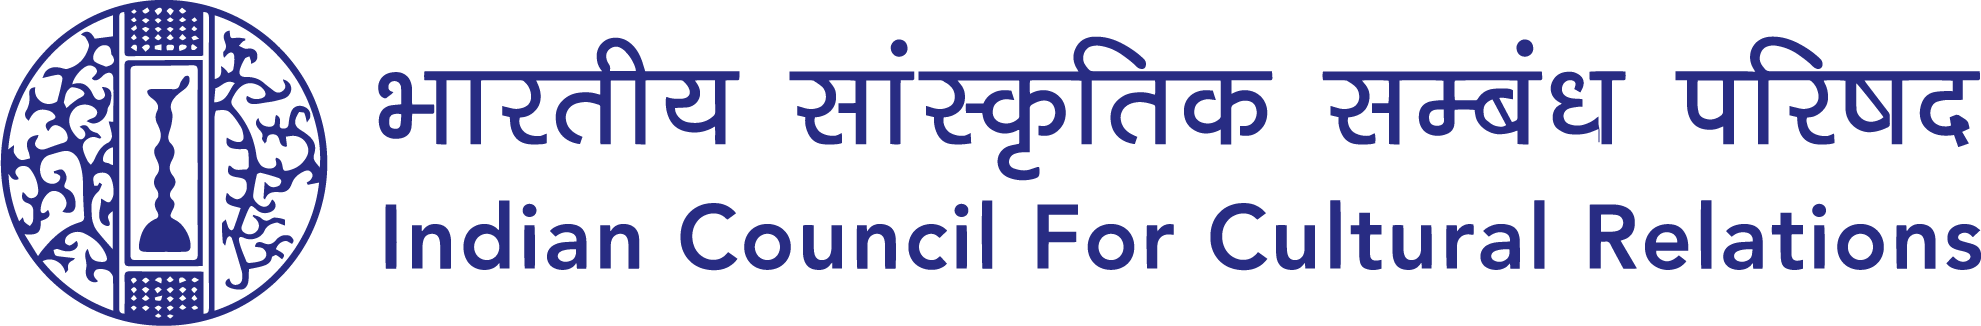 भारतीय सांस्कृतिक संबंध परिषद, भारत सरकार की आधिकारिक वेबसाइट